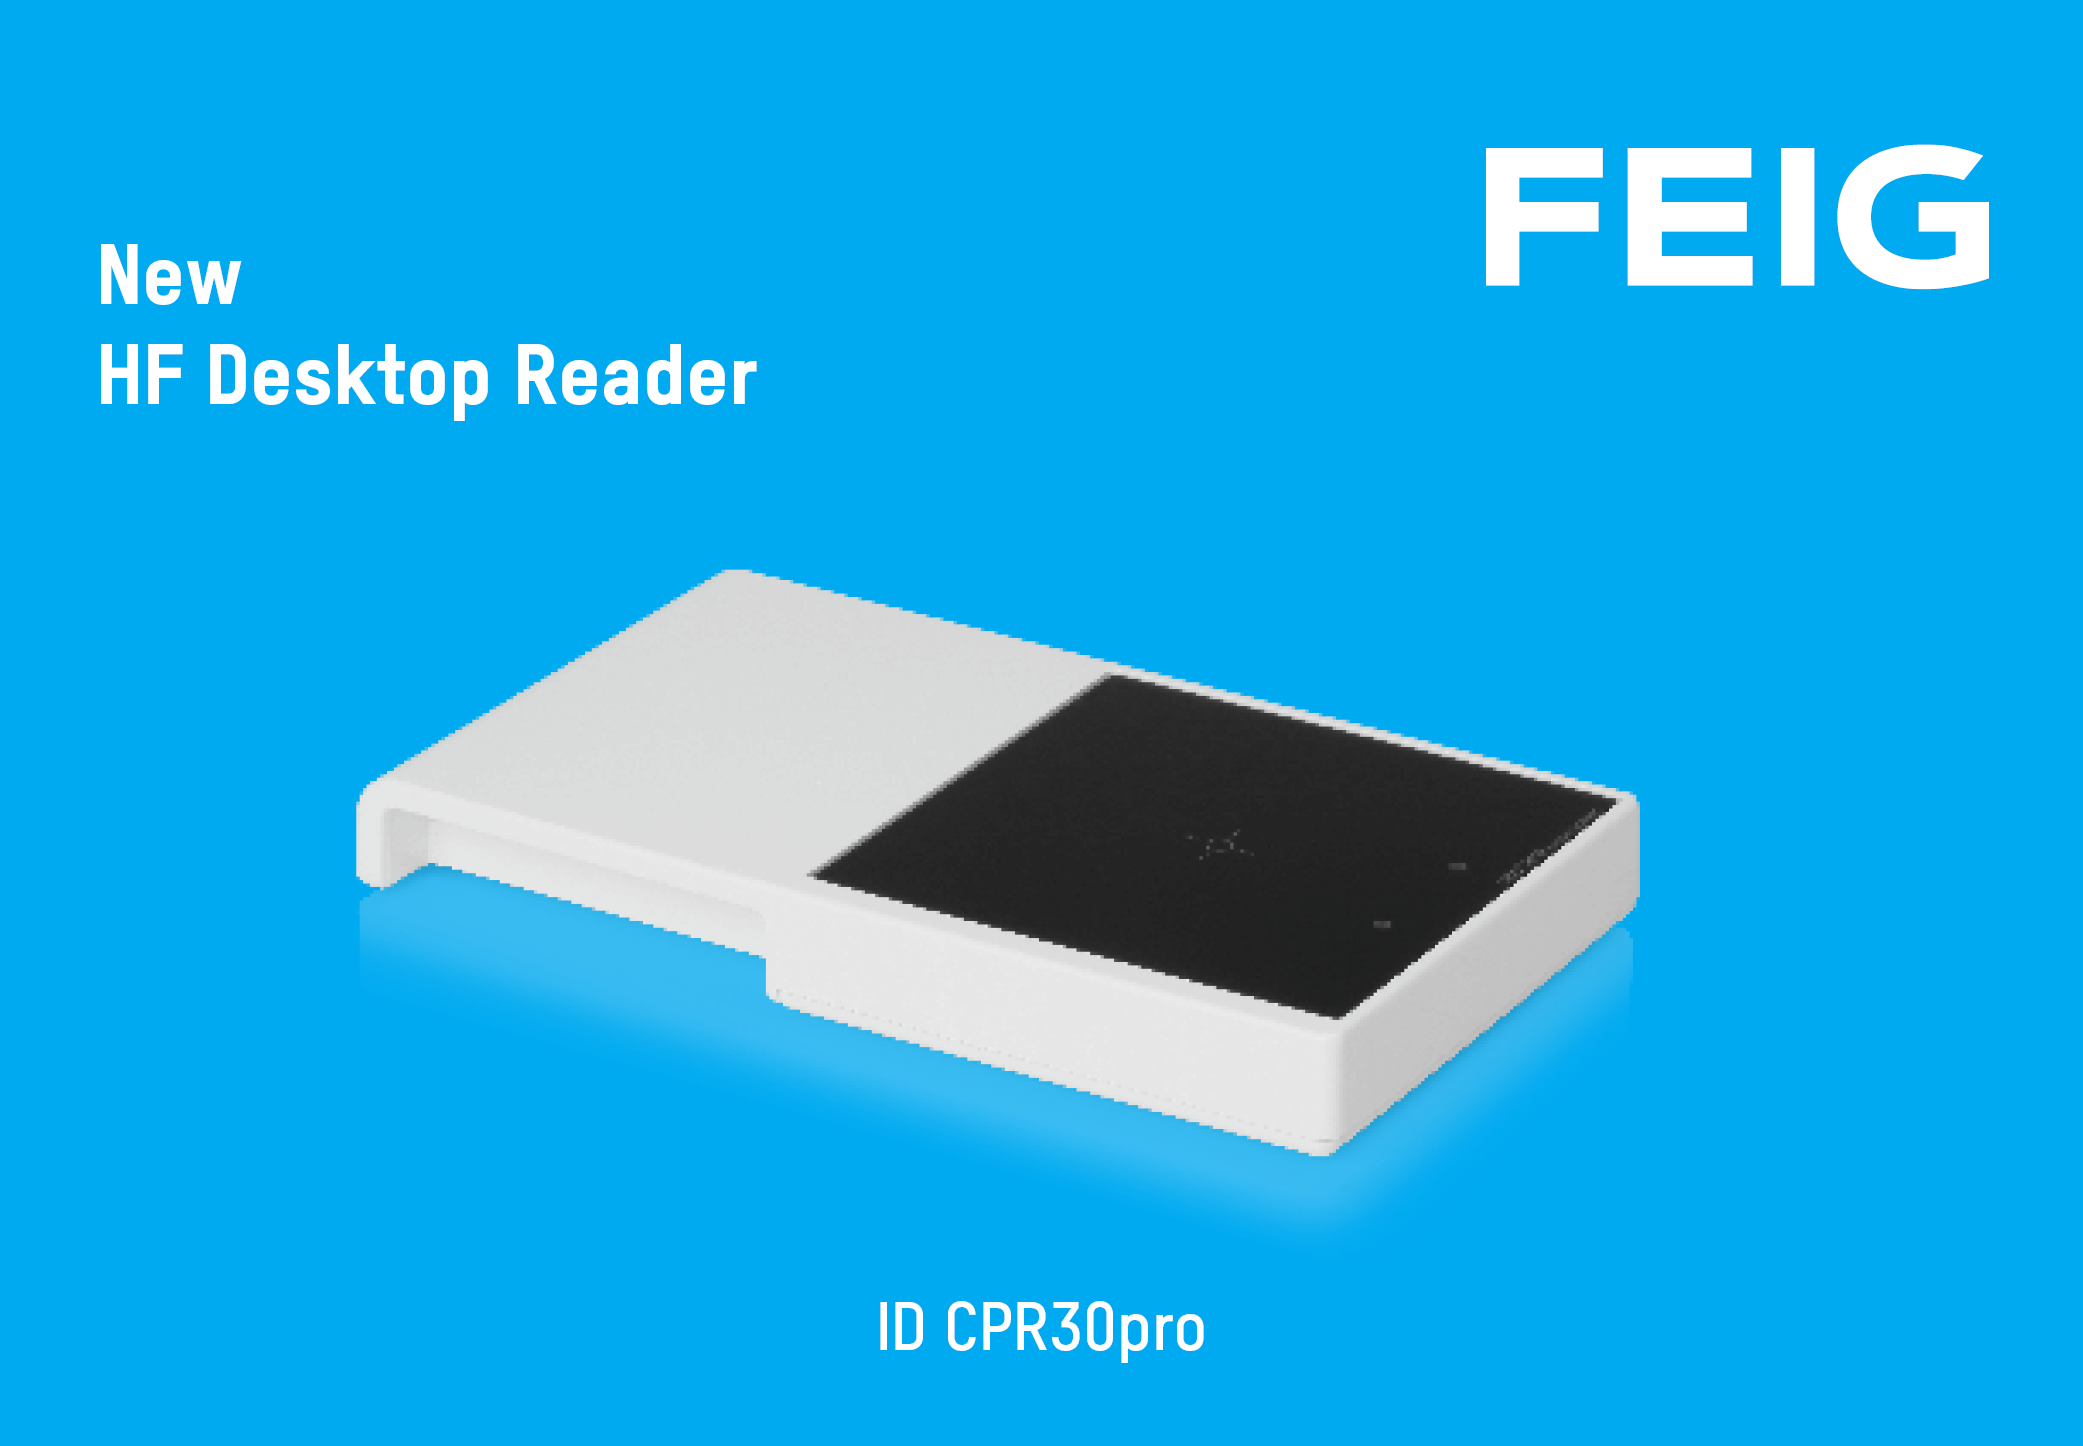 New HF Desktop Reader